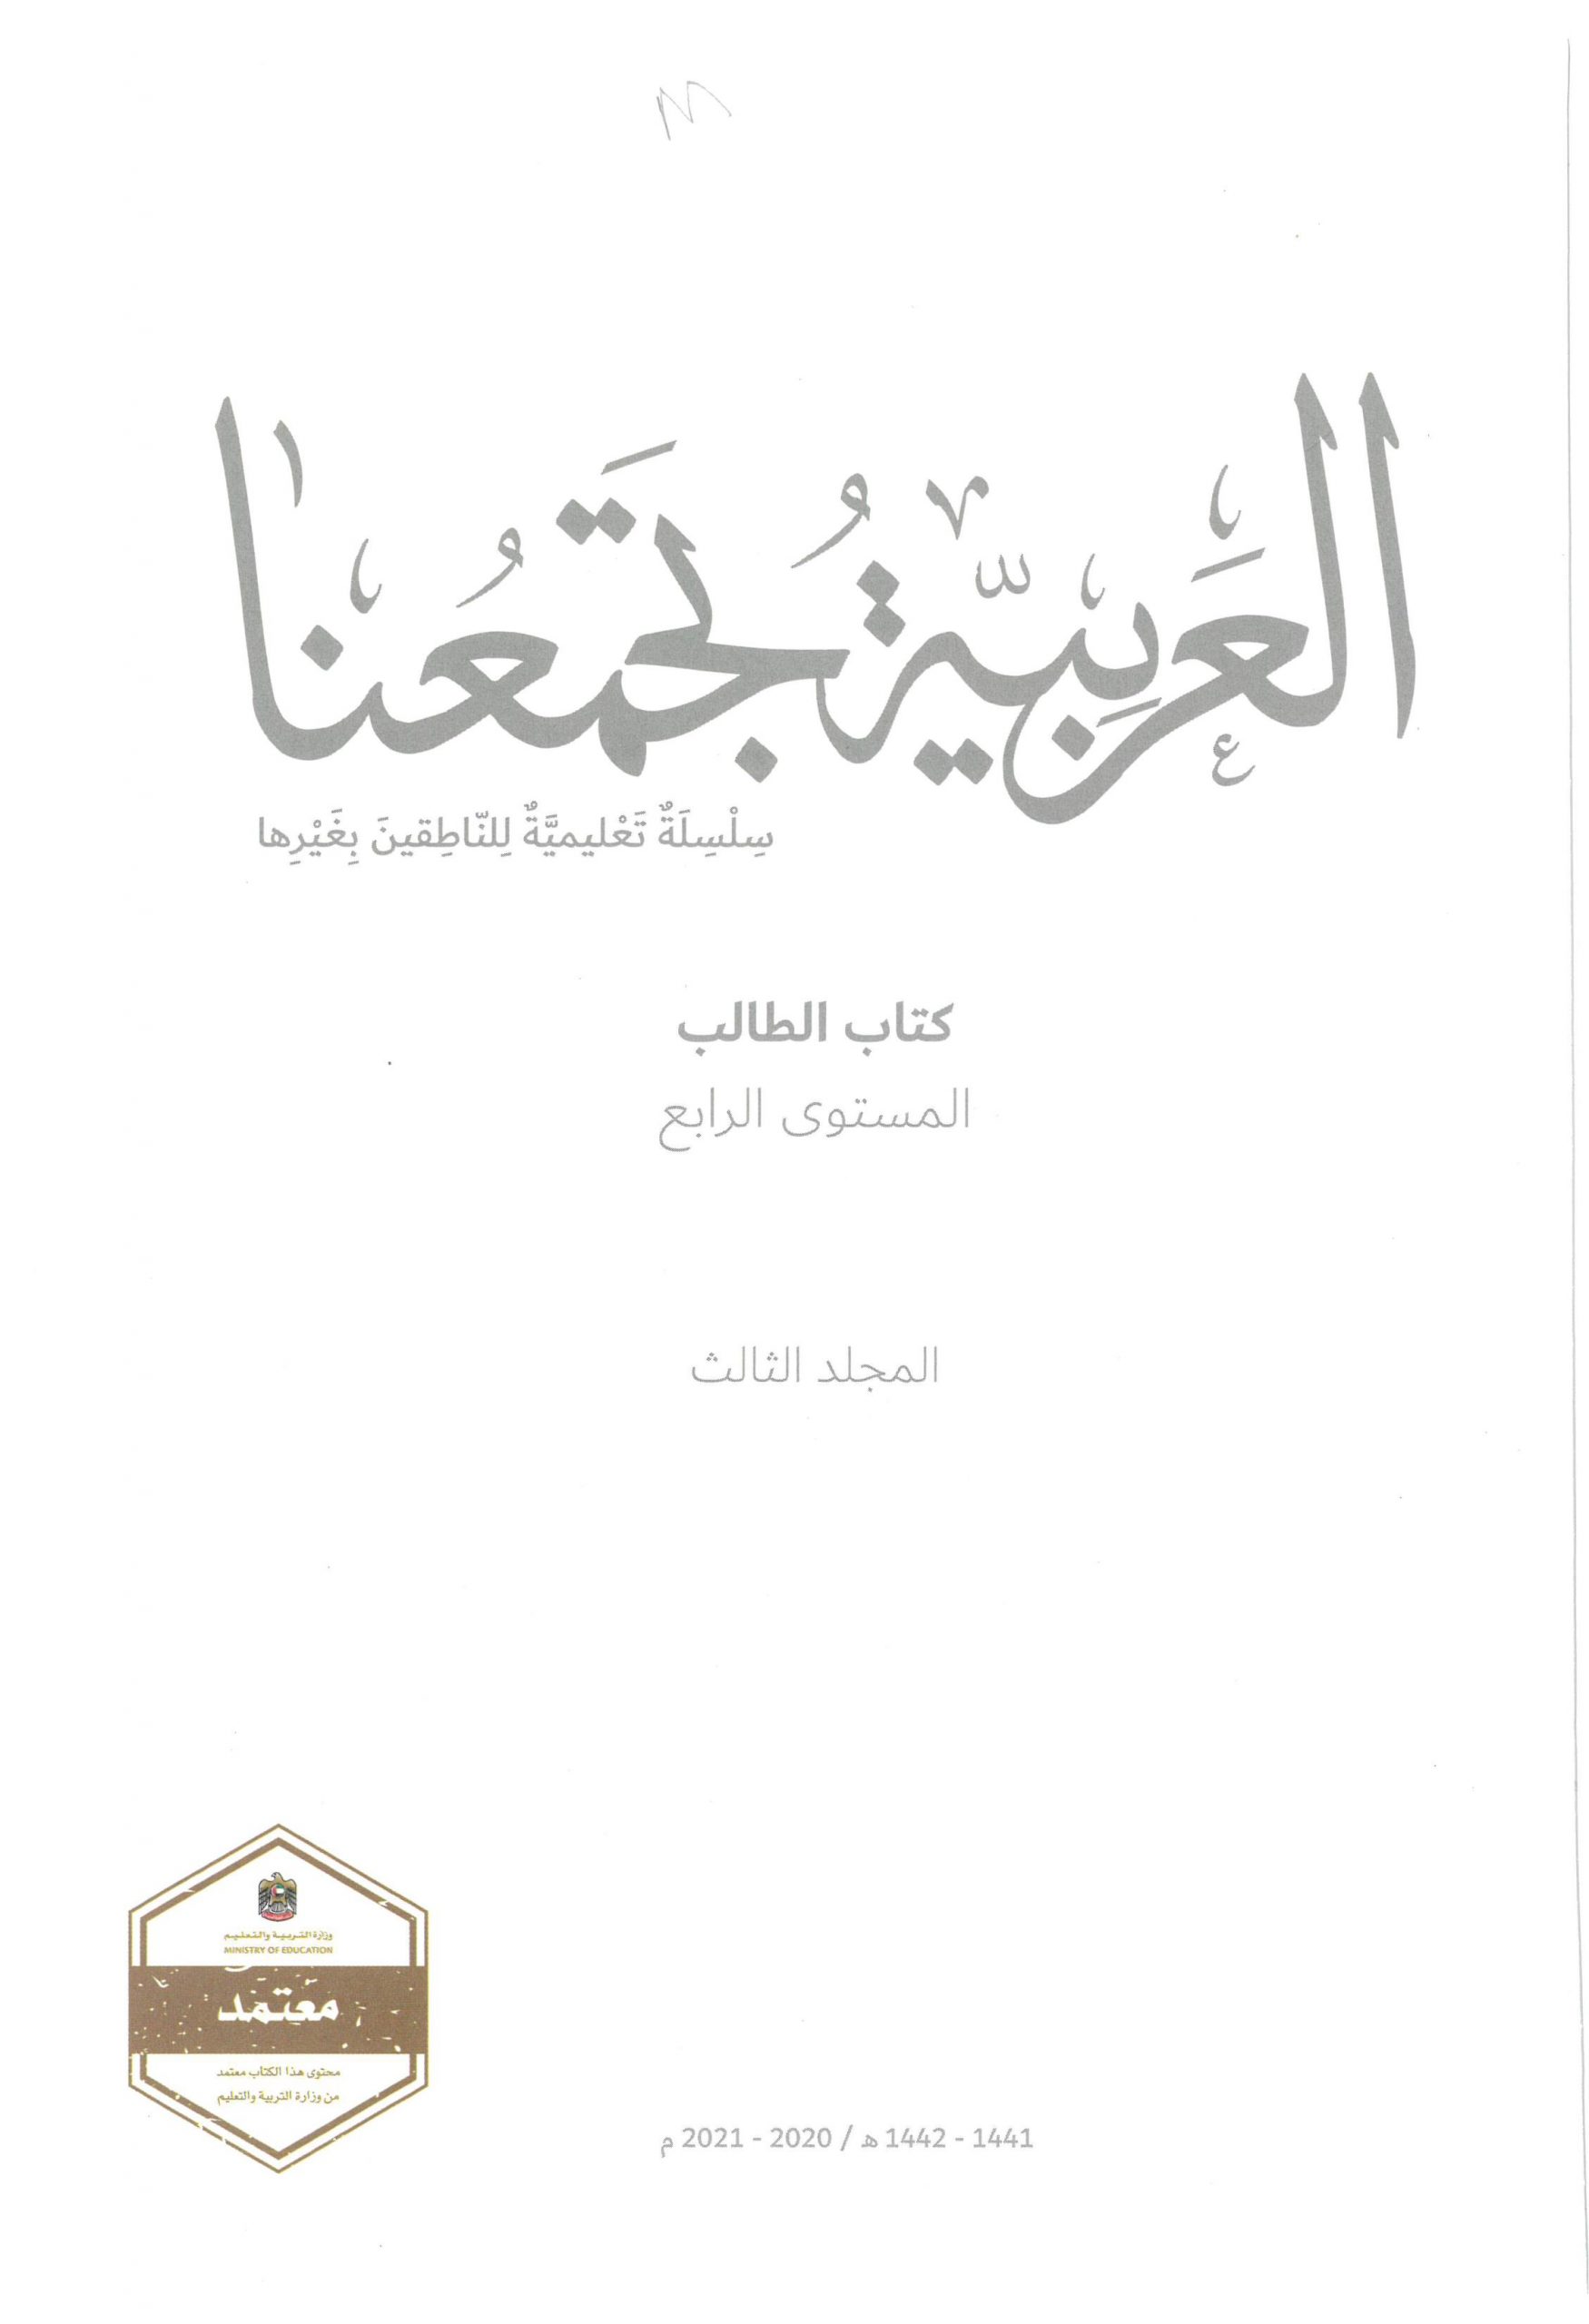 كتاب الطالب لغير الناطقين بها الفصل الدراسي الثالث 2020-2021 الصف الرابع مادة اللغة العربية